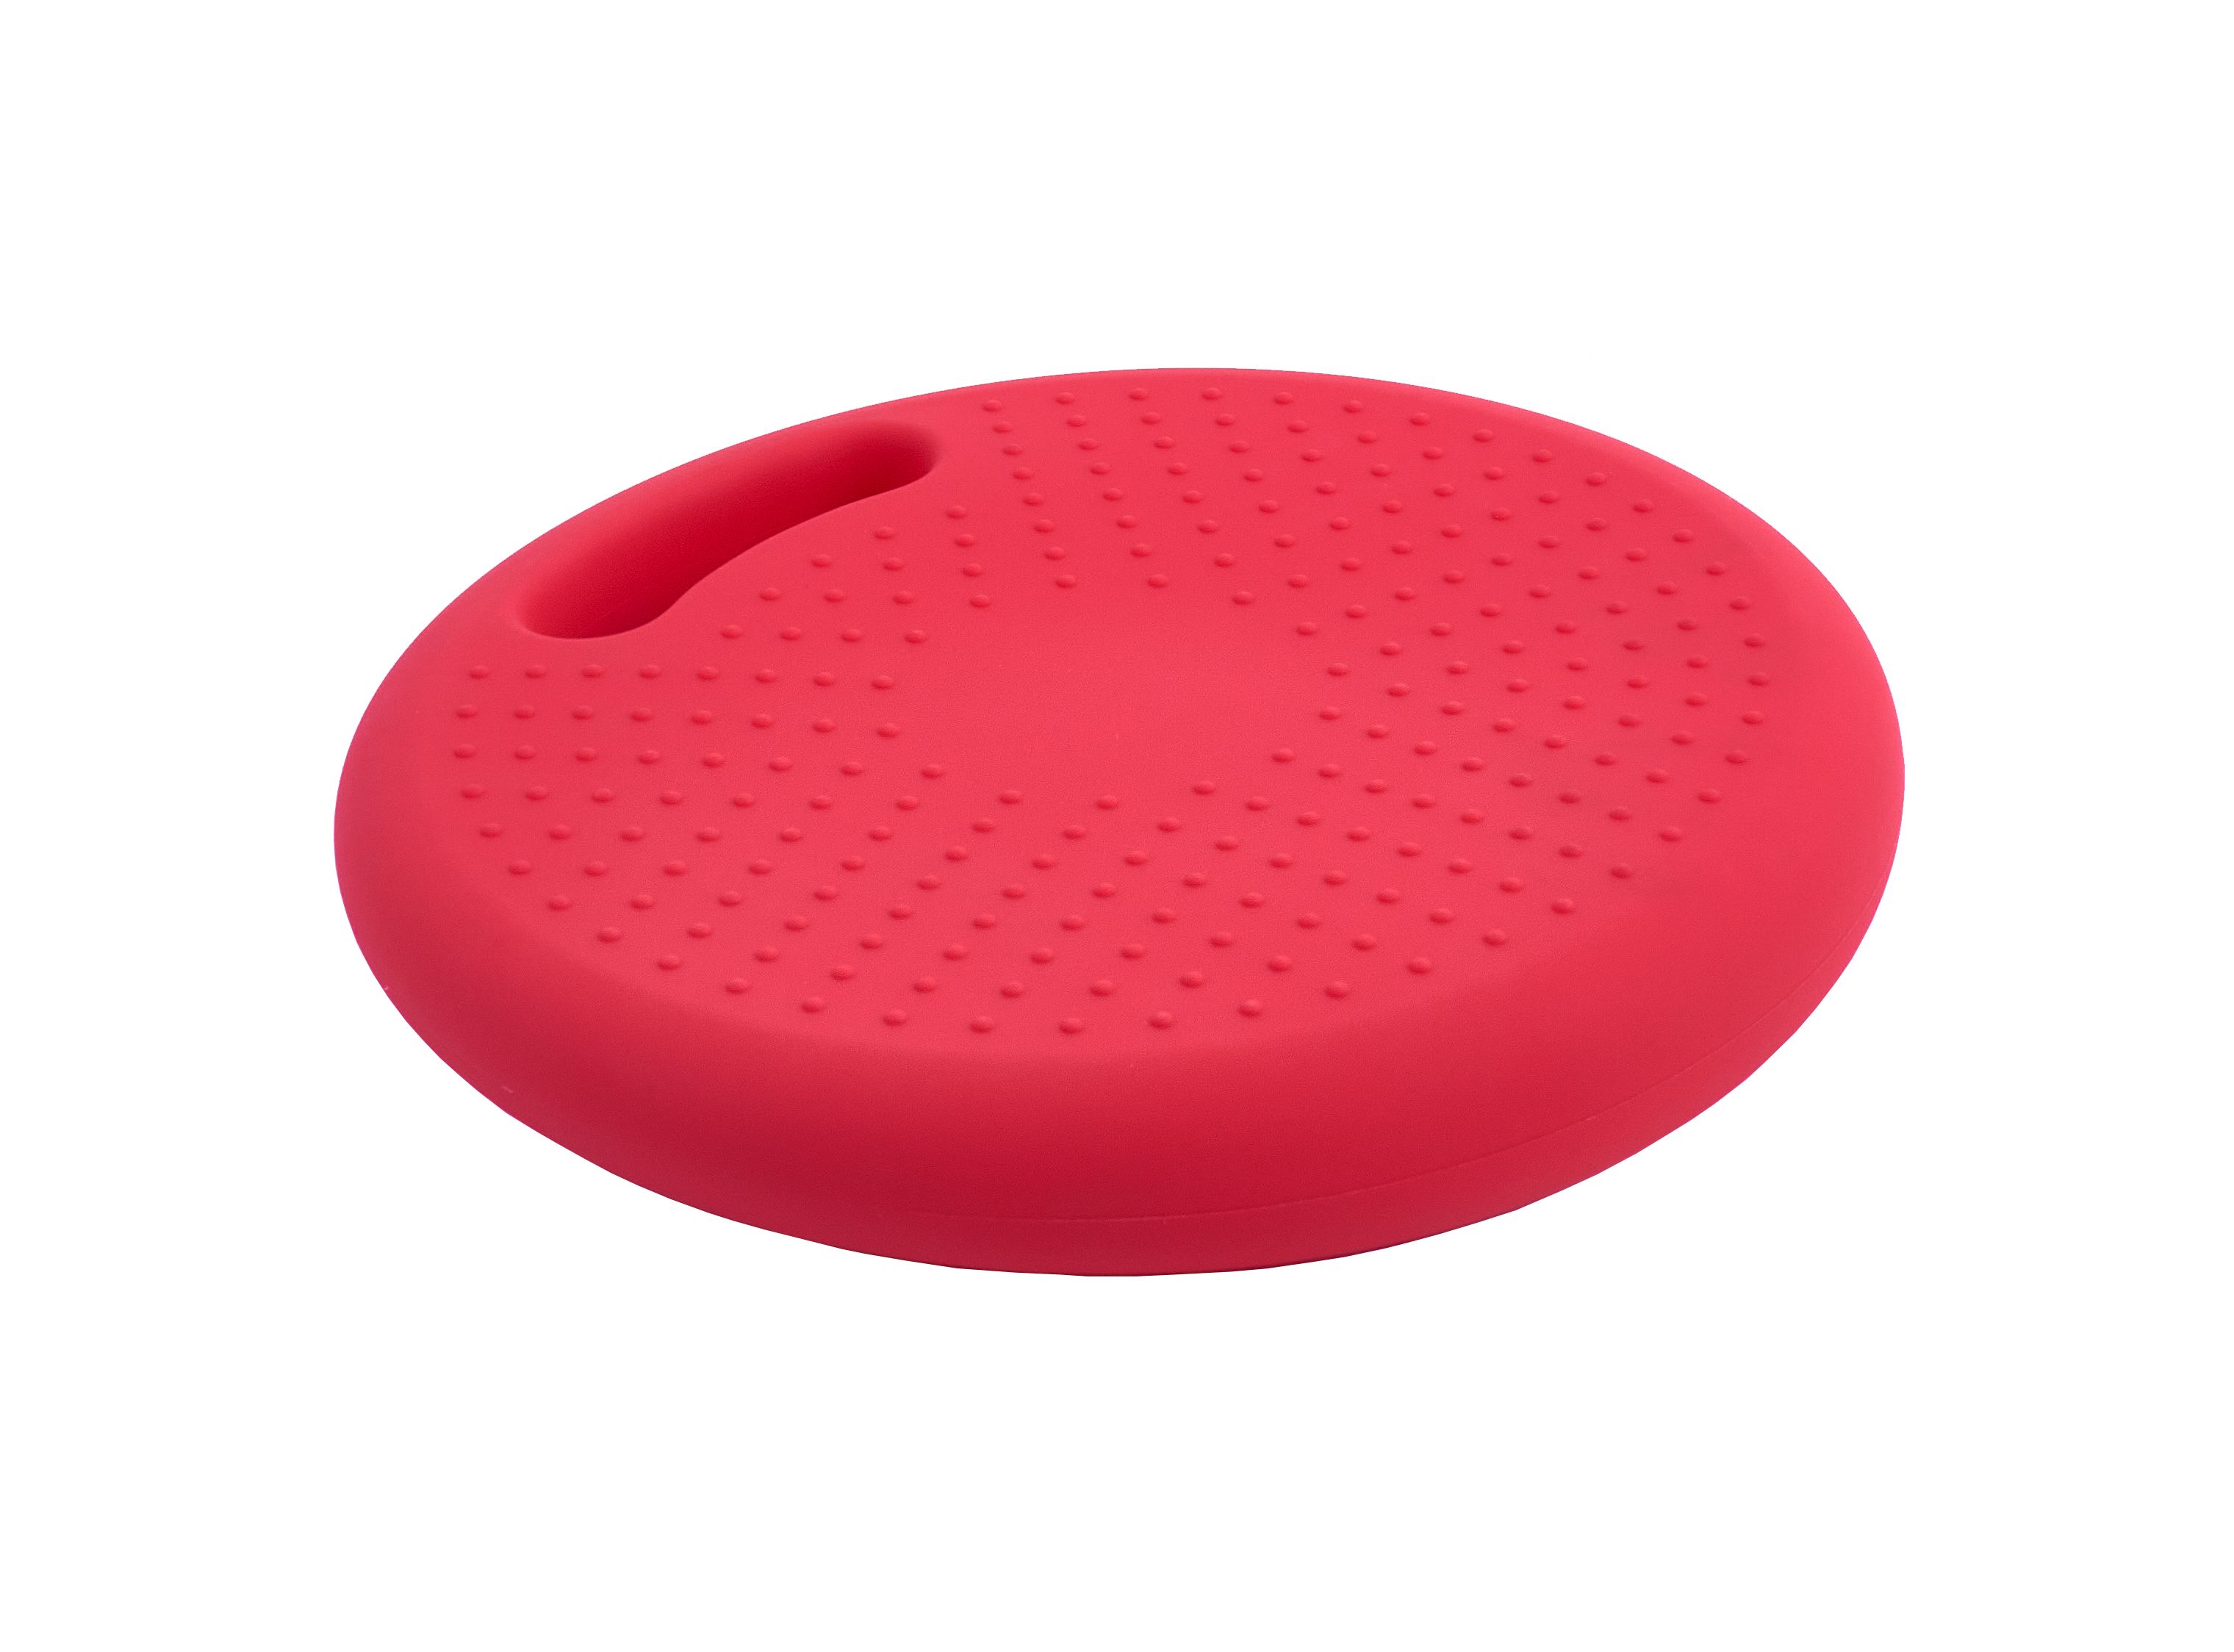 Массажно-балансировочная подушка с ручкой красная